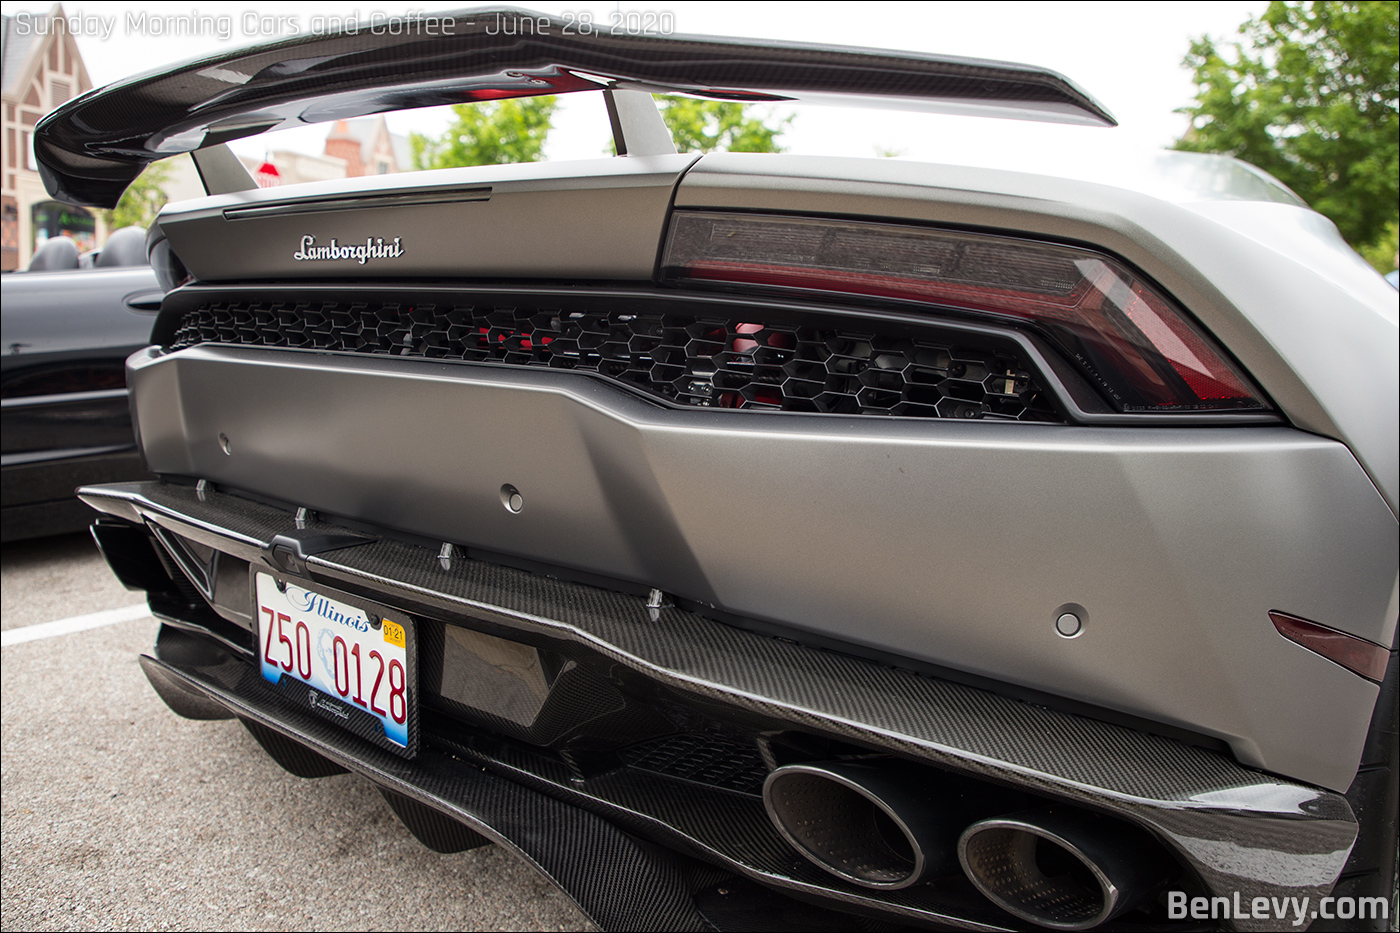 Carbon fiber spoiler and diffuser on Lamborghini Huracan